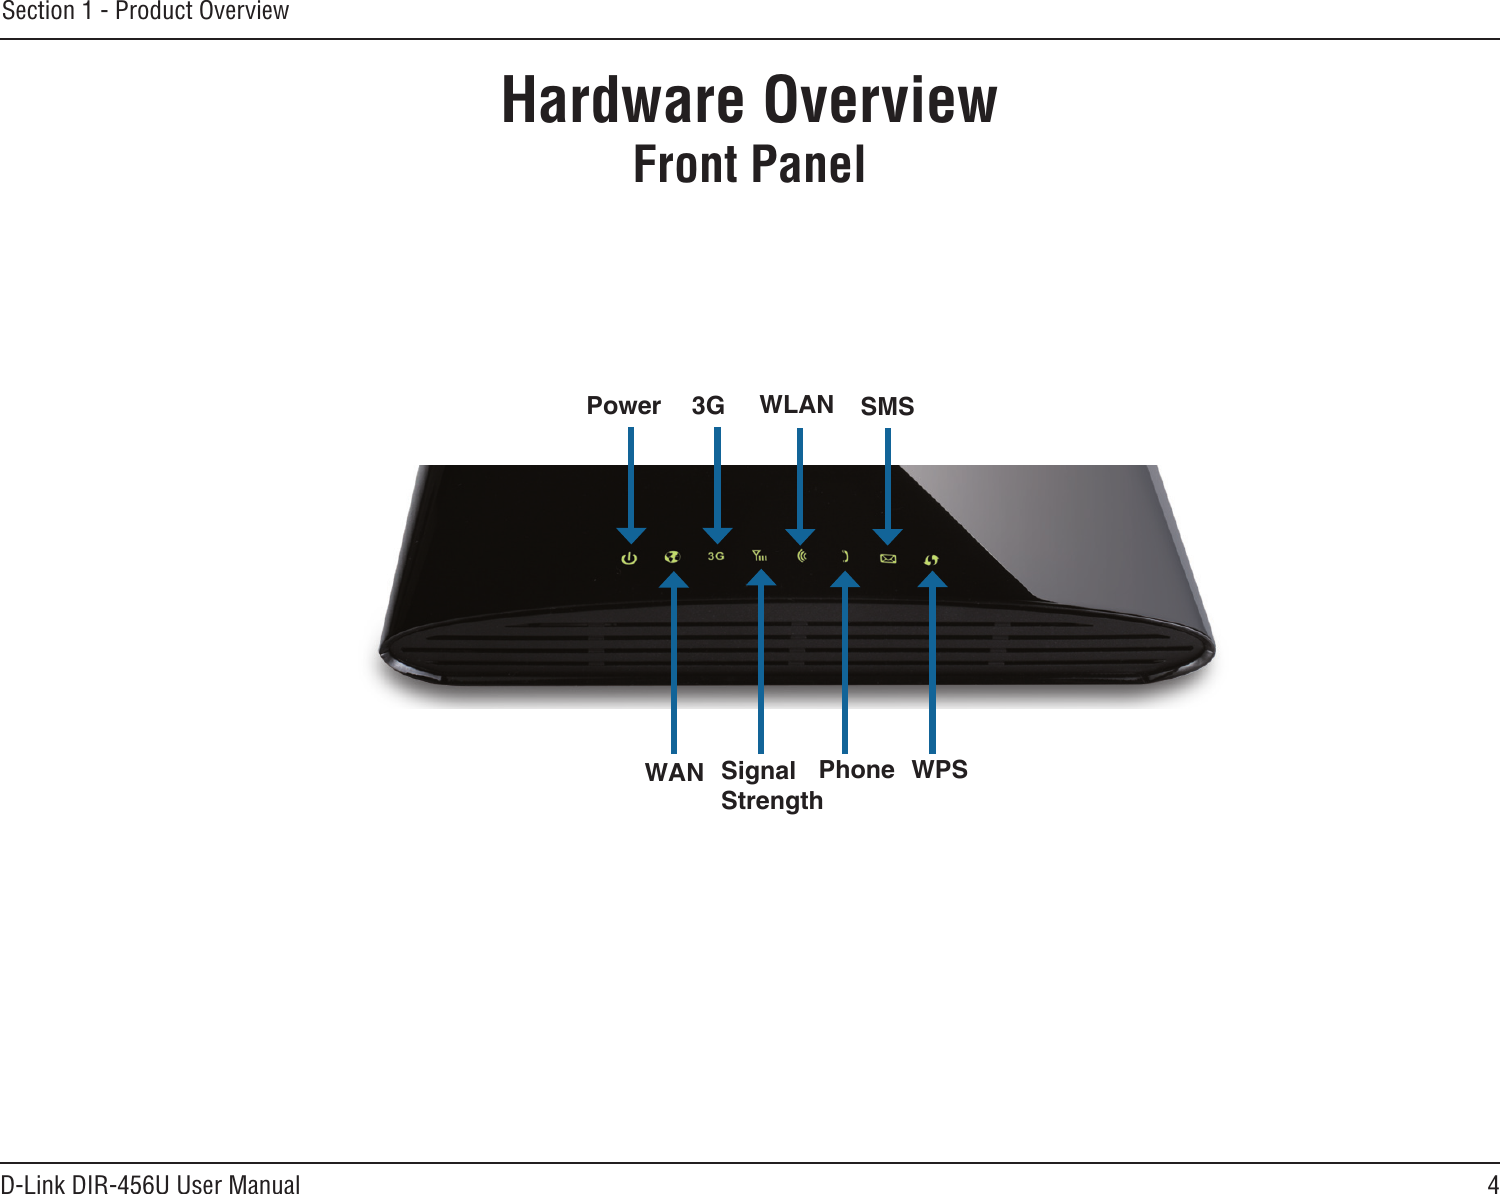 4D-Link DIR-456U User ManualSection 1 - Product OverviewHardware OverviewFront PanelPower 3G WLAN SMSWAN SignalStrengthPhone WPS